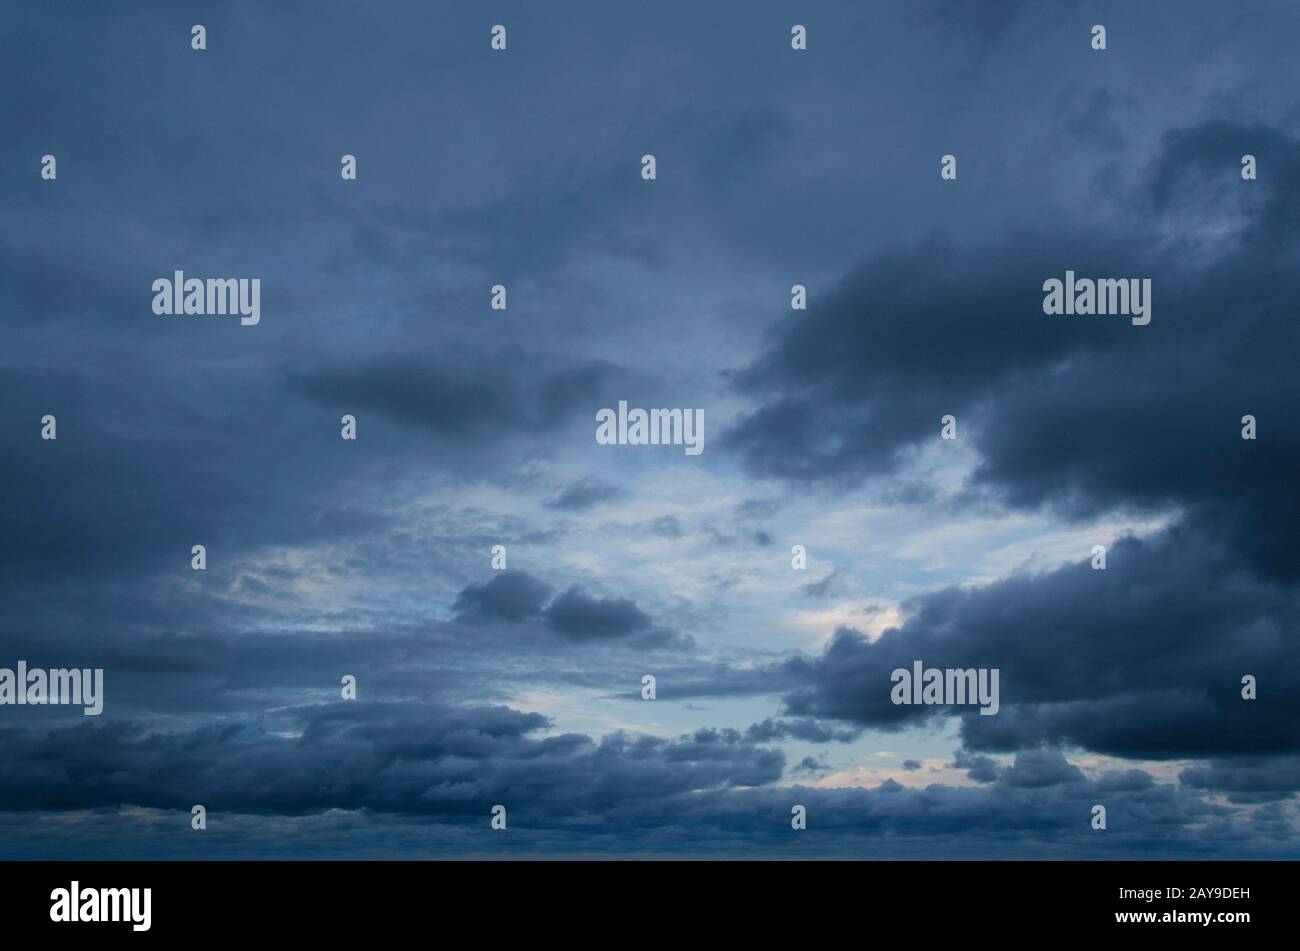 Cloudscape: Sullo sfondo una piccola parte blu chiara, il resto dell'immagine è riempito da nuvole grigio scuro che si estendono attraverso il cielo Foto Stock